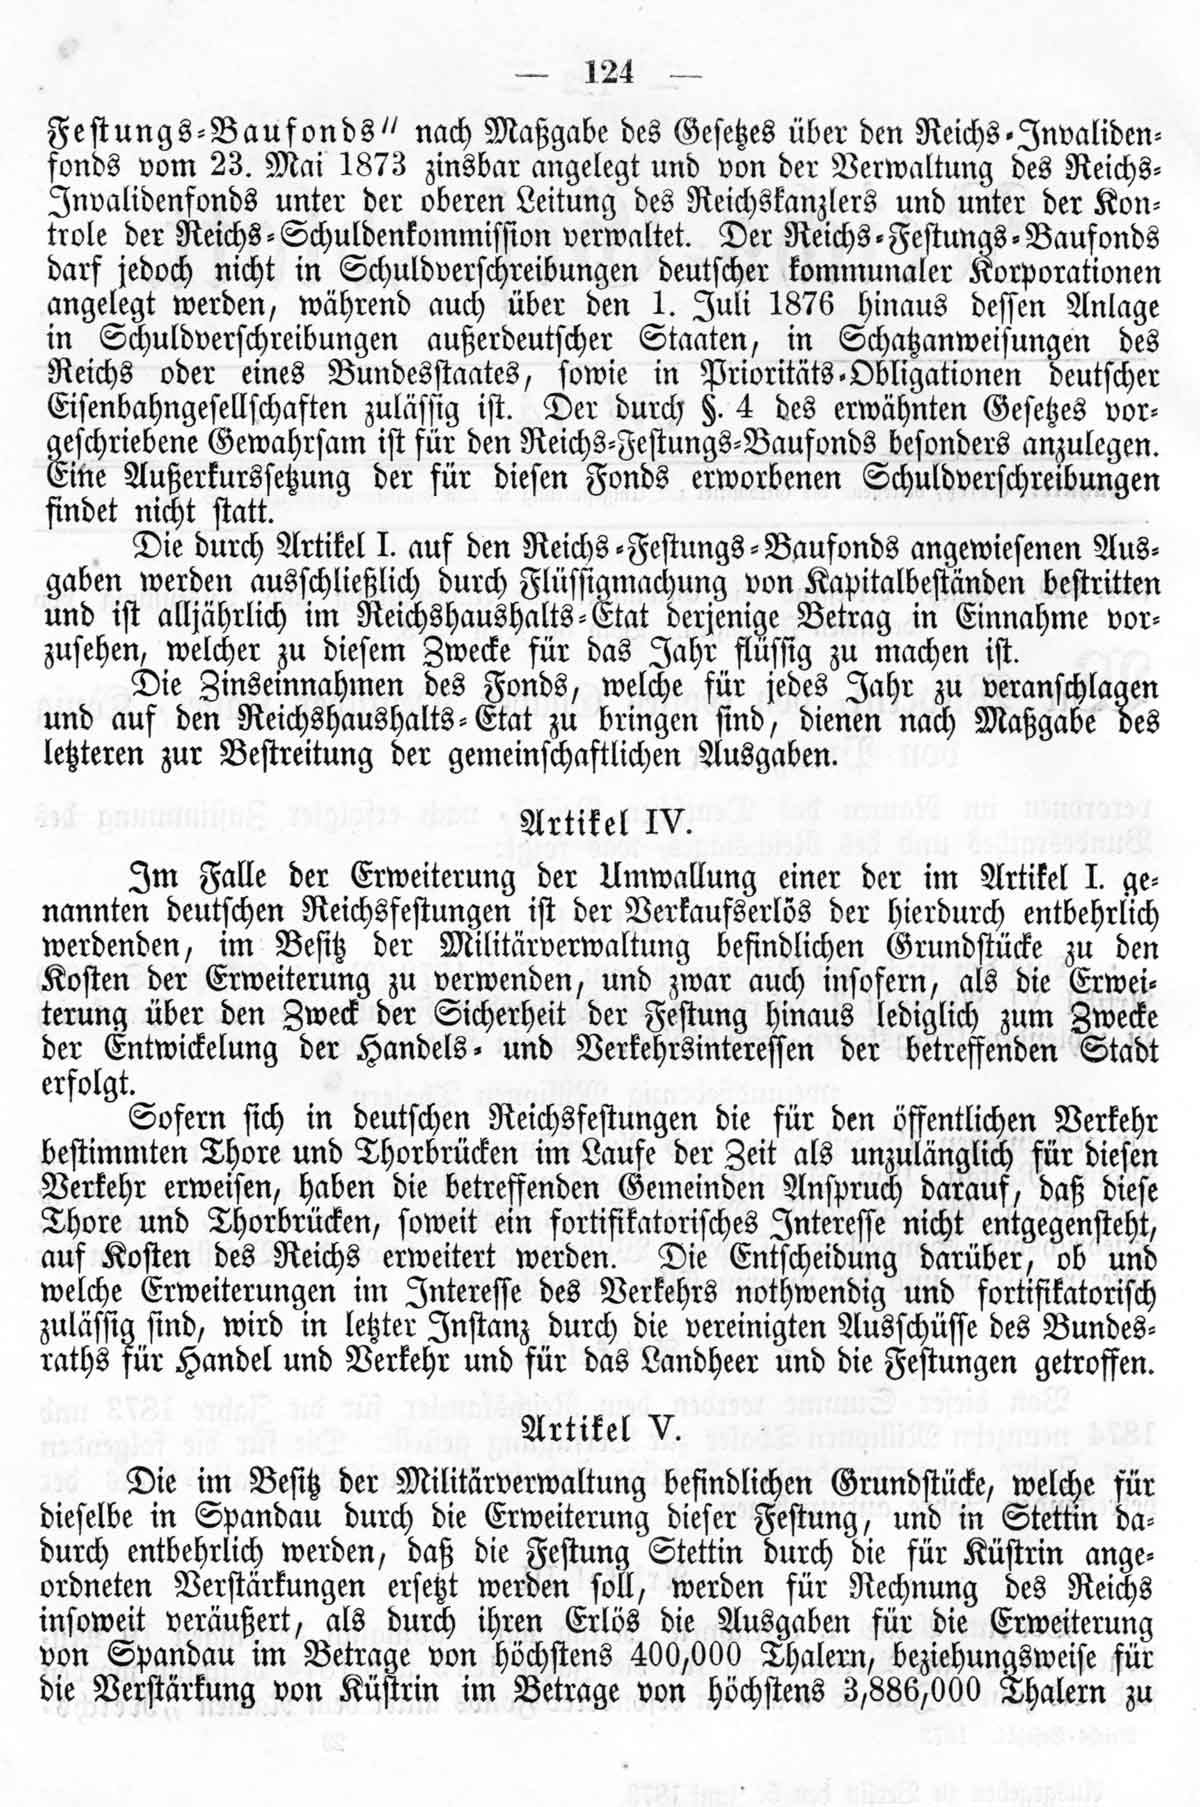 Deutsches Reichs-Gesetzblatt No. 14 vom 30. Mai 1873, Seite 124